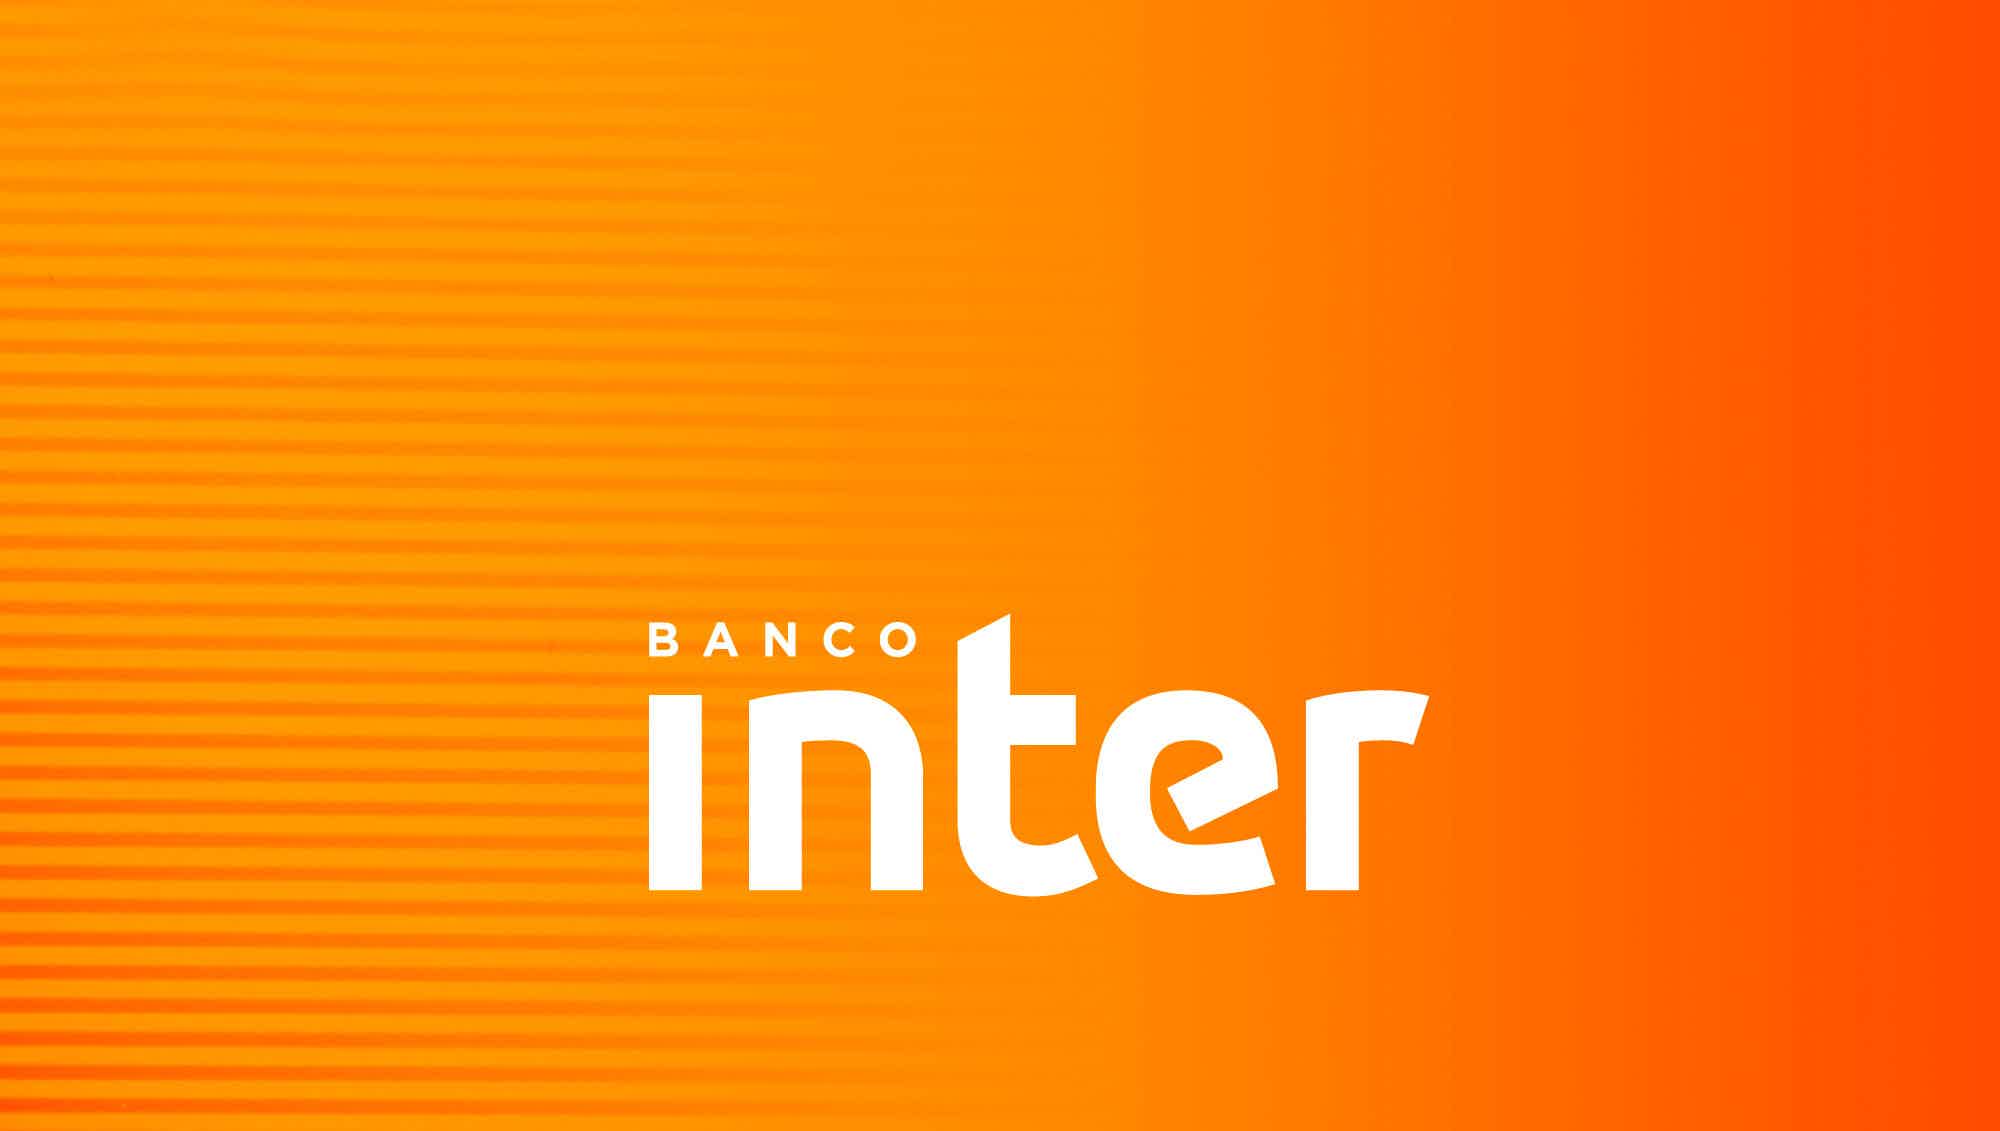 Mas, afinal, qual é o cartão do Banco Inter?